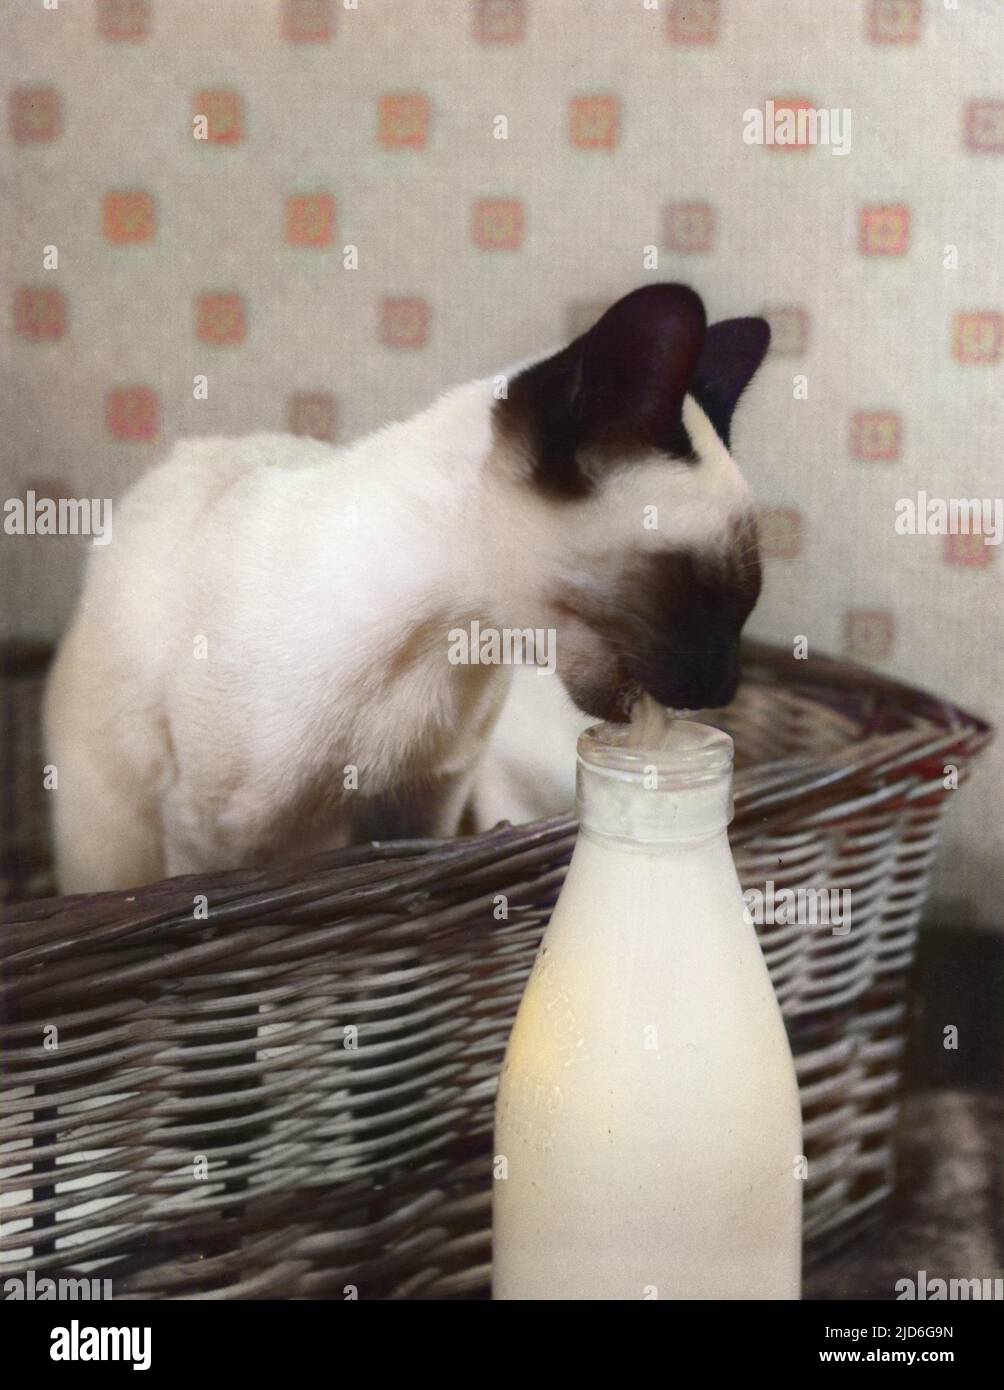 Ein verwöhntes siamesisches Kätzchen sitzt in seinem Weidenkorb und schmilbt die Creme von der Oberseite einer Milchflasche auf! Kolorierte Version von : 10173900 Datum: 1960s Stockfoto